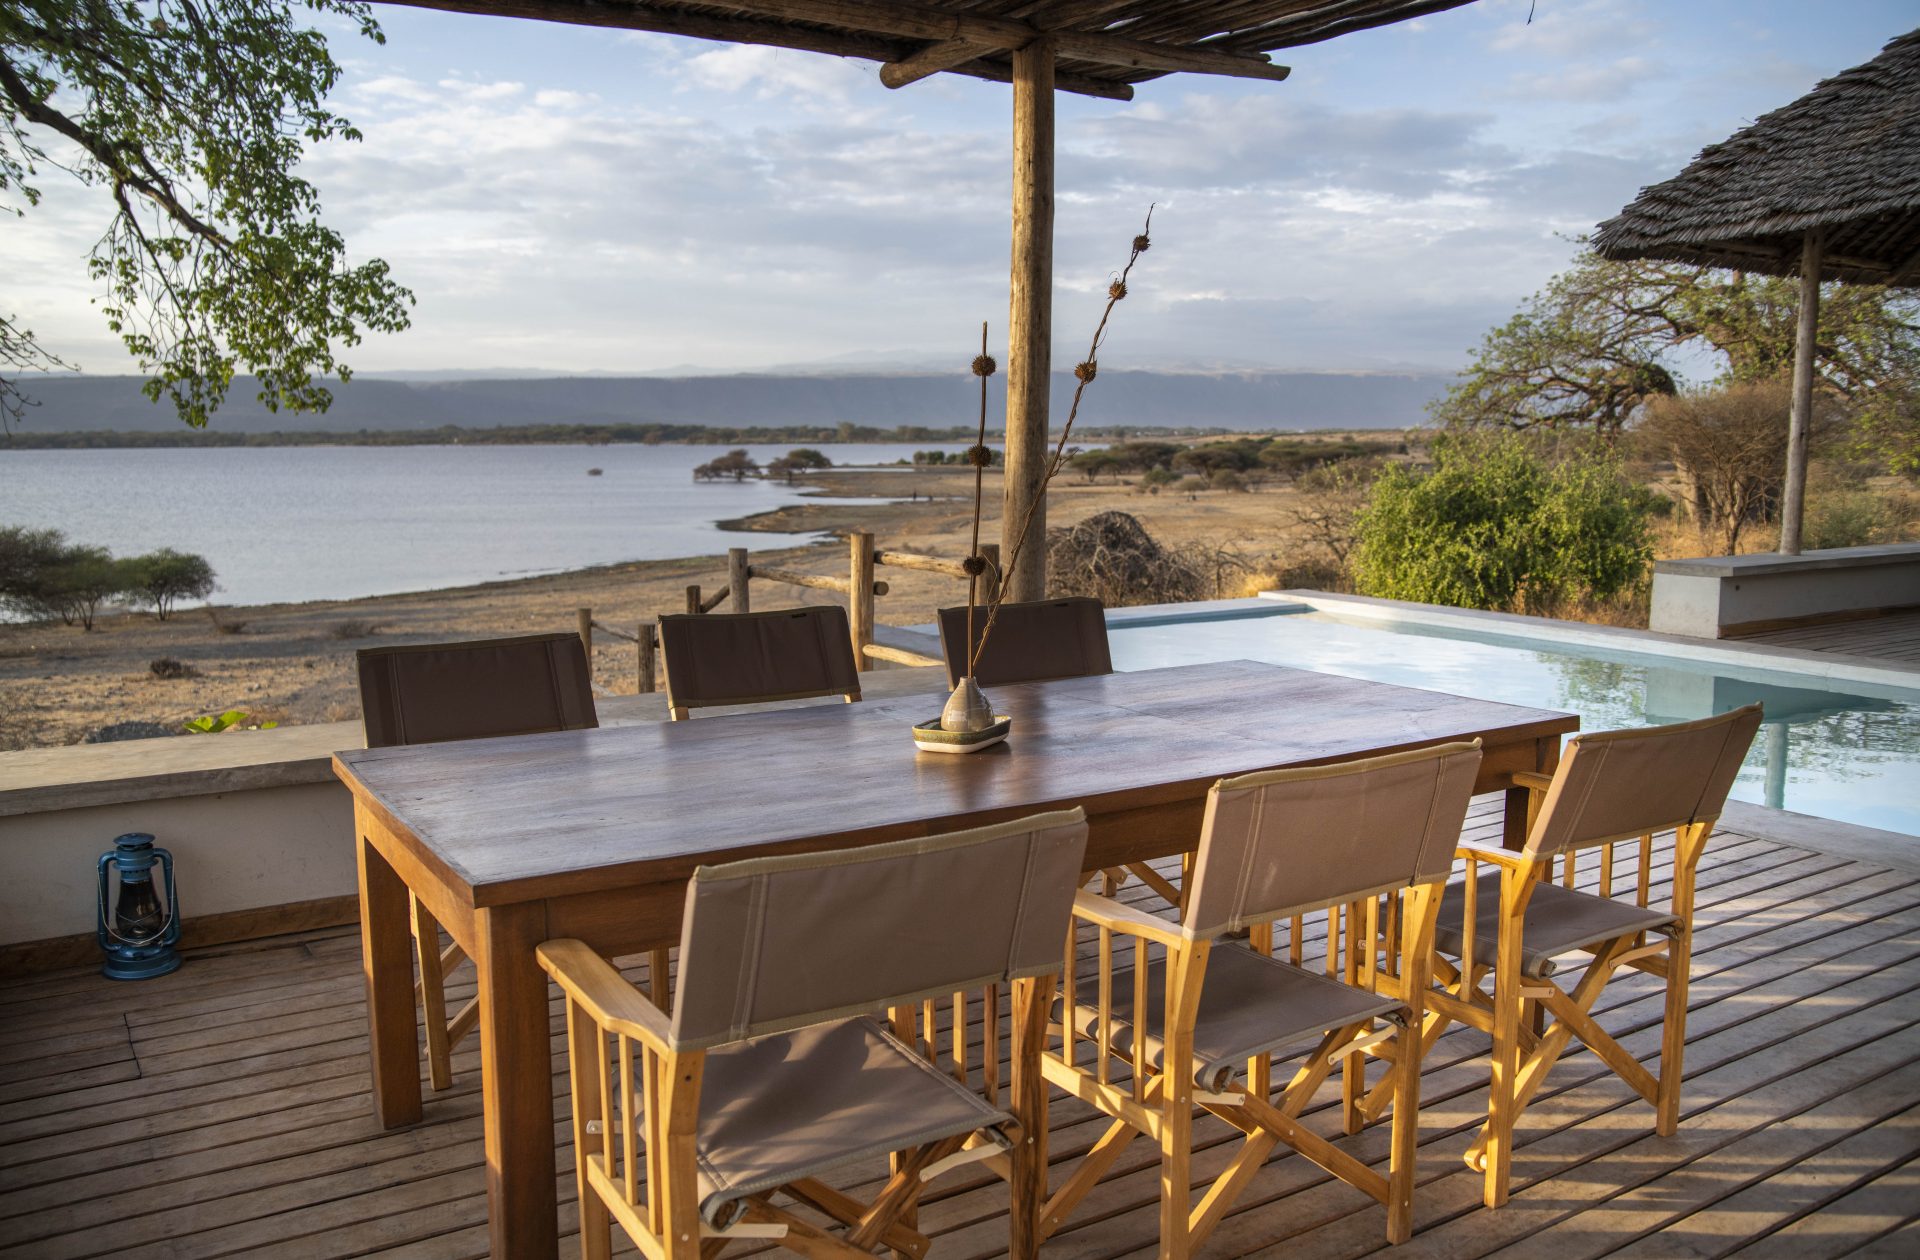 Manyaras Secret Veranda Safari Villa Dining Set Up For 6